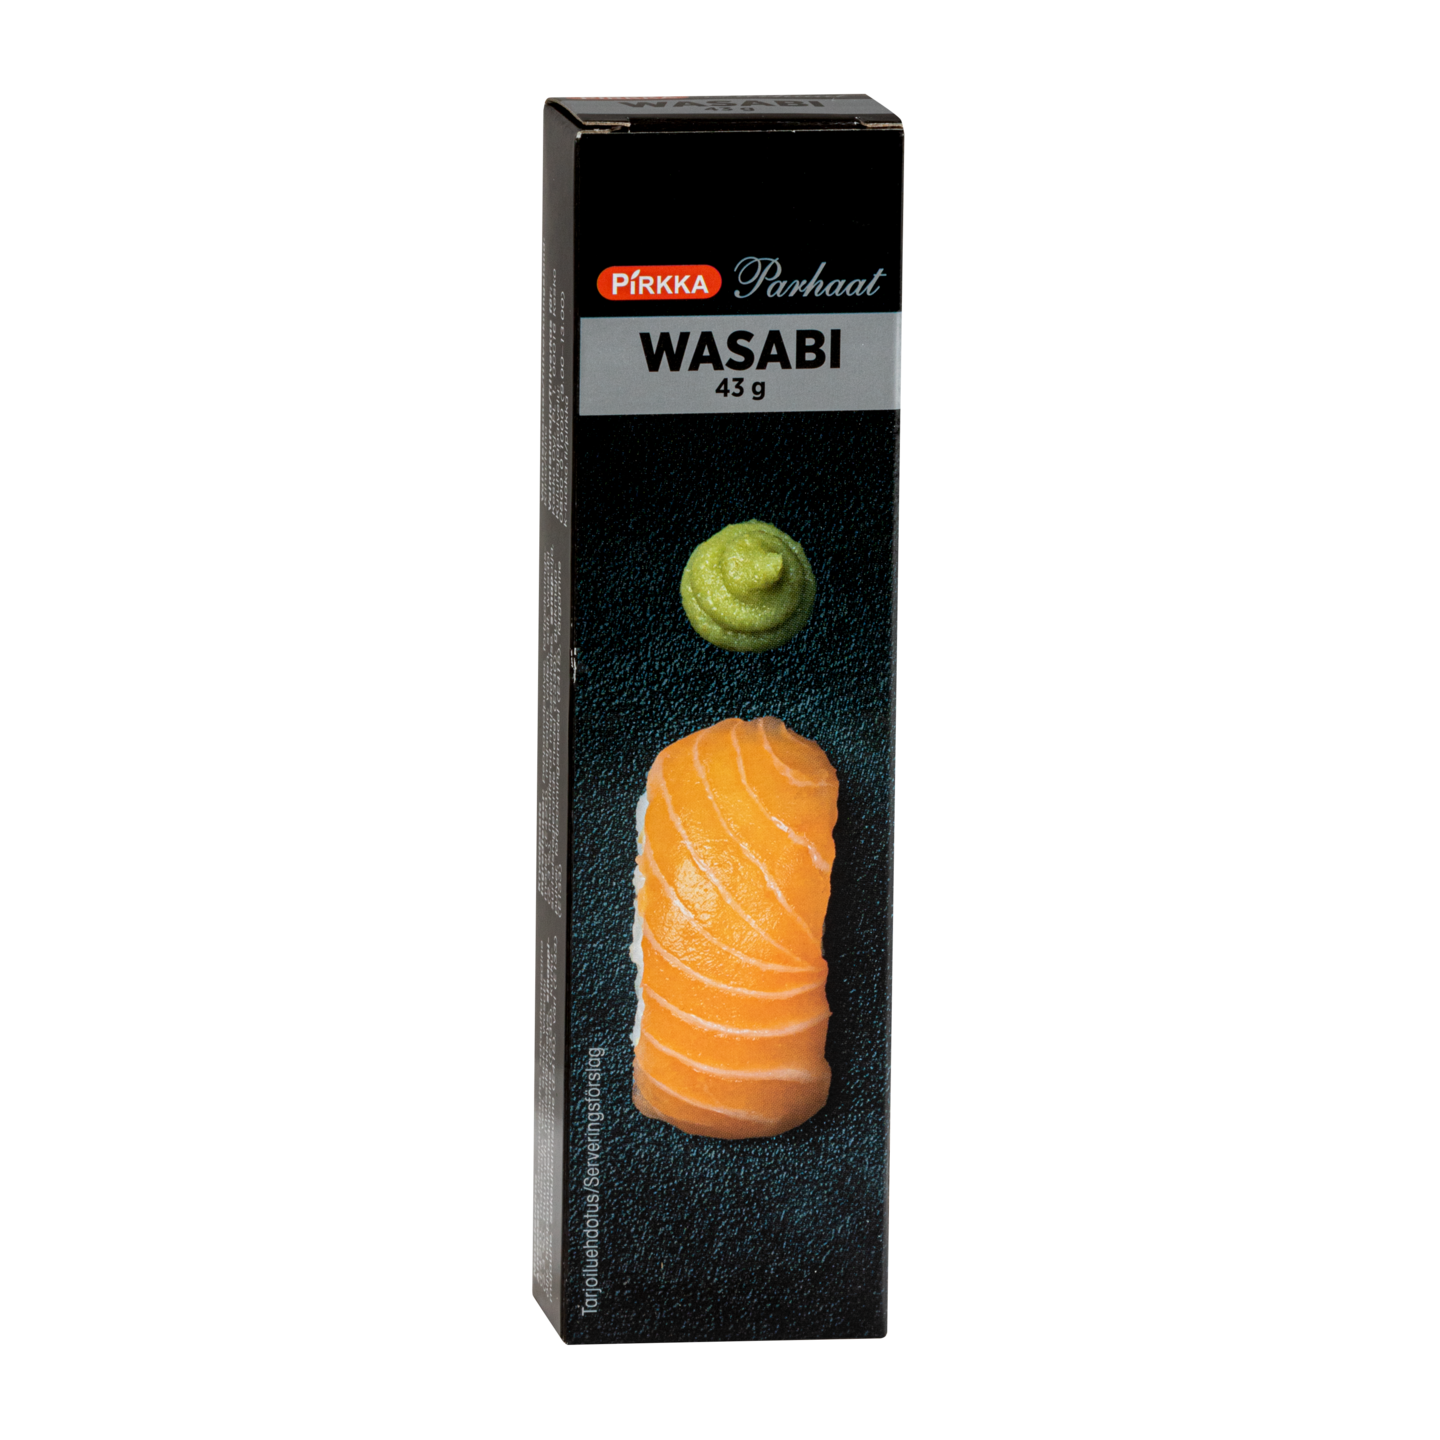 Pirkka Parhaat wasabi 43g | K-Ruoka Verkkokauppa